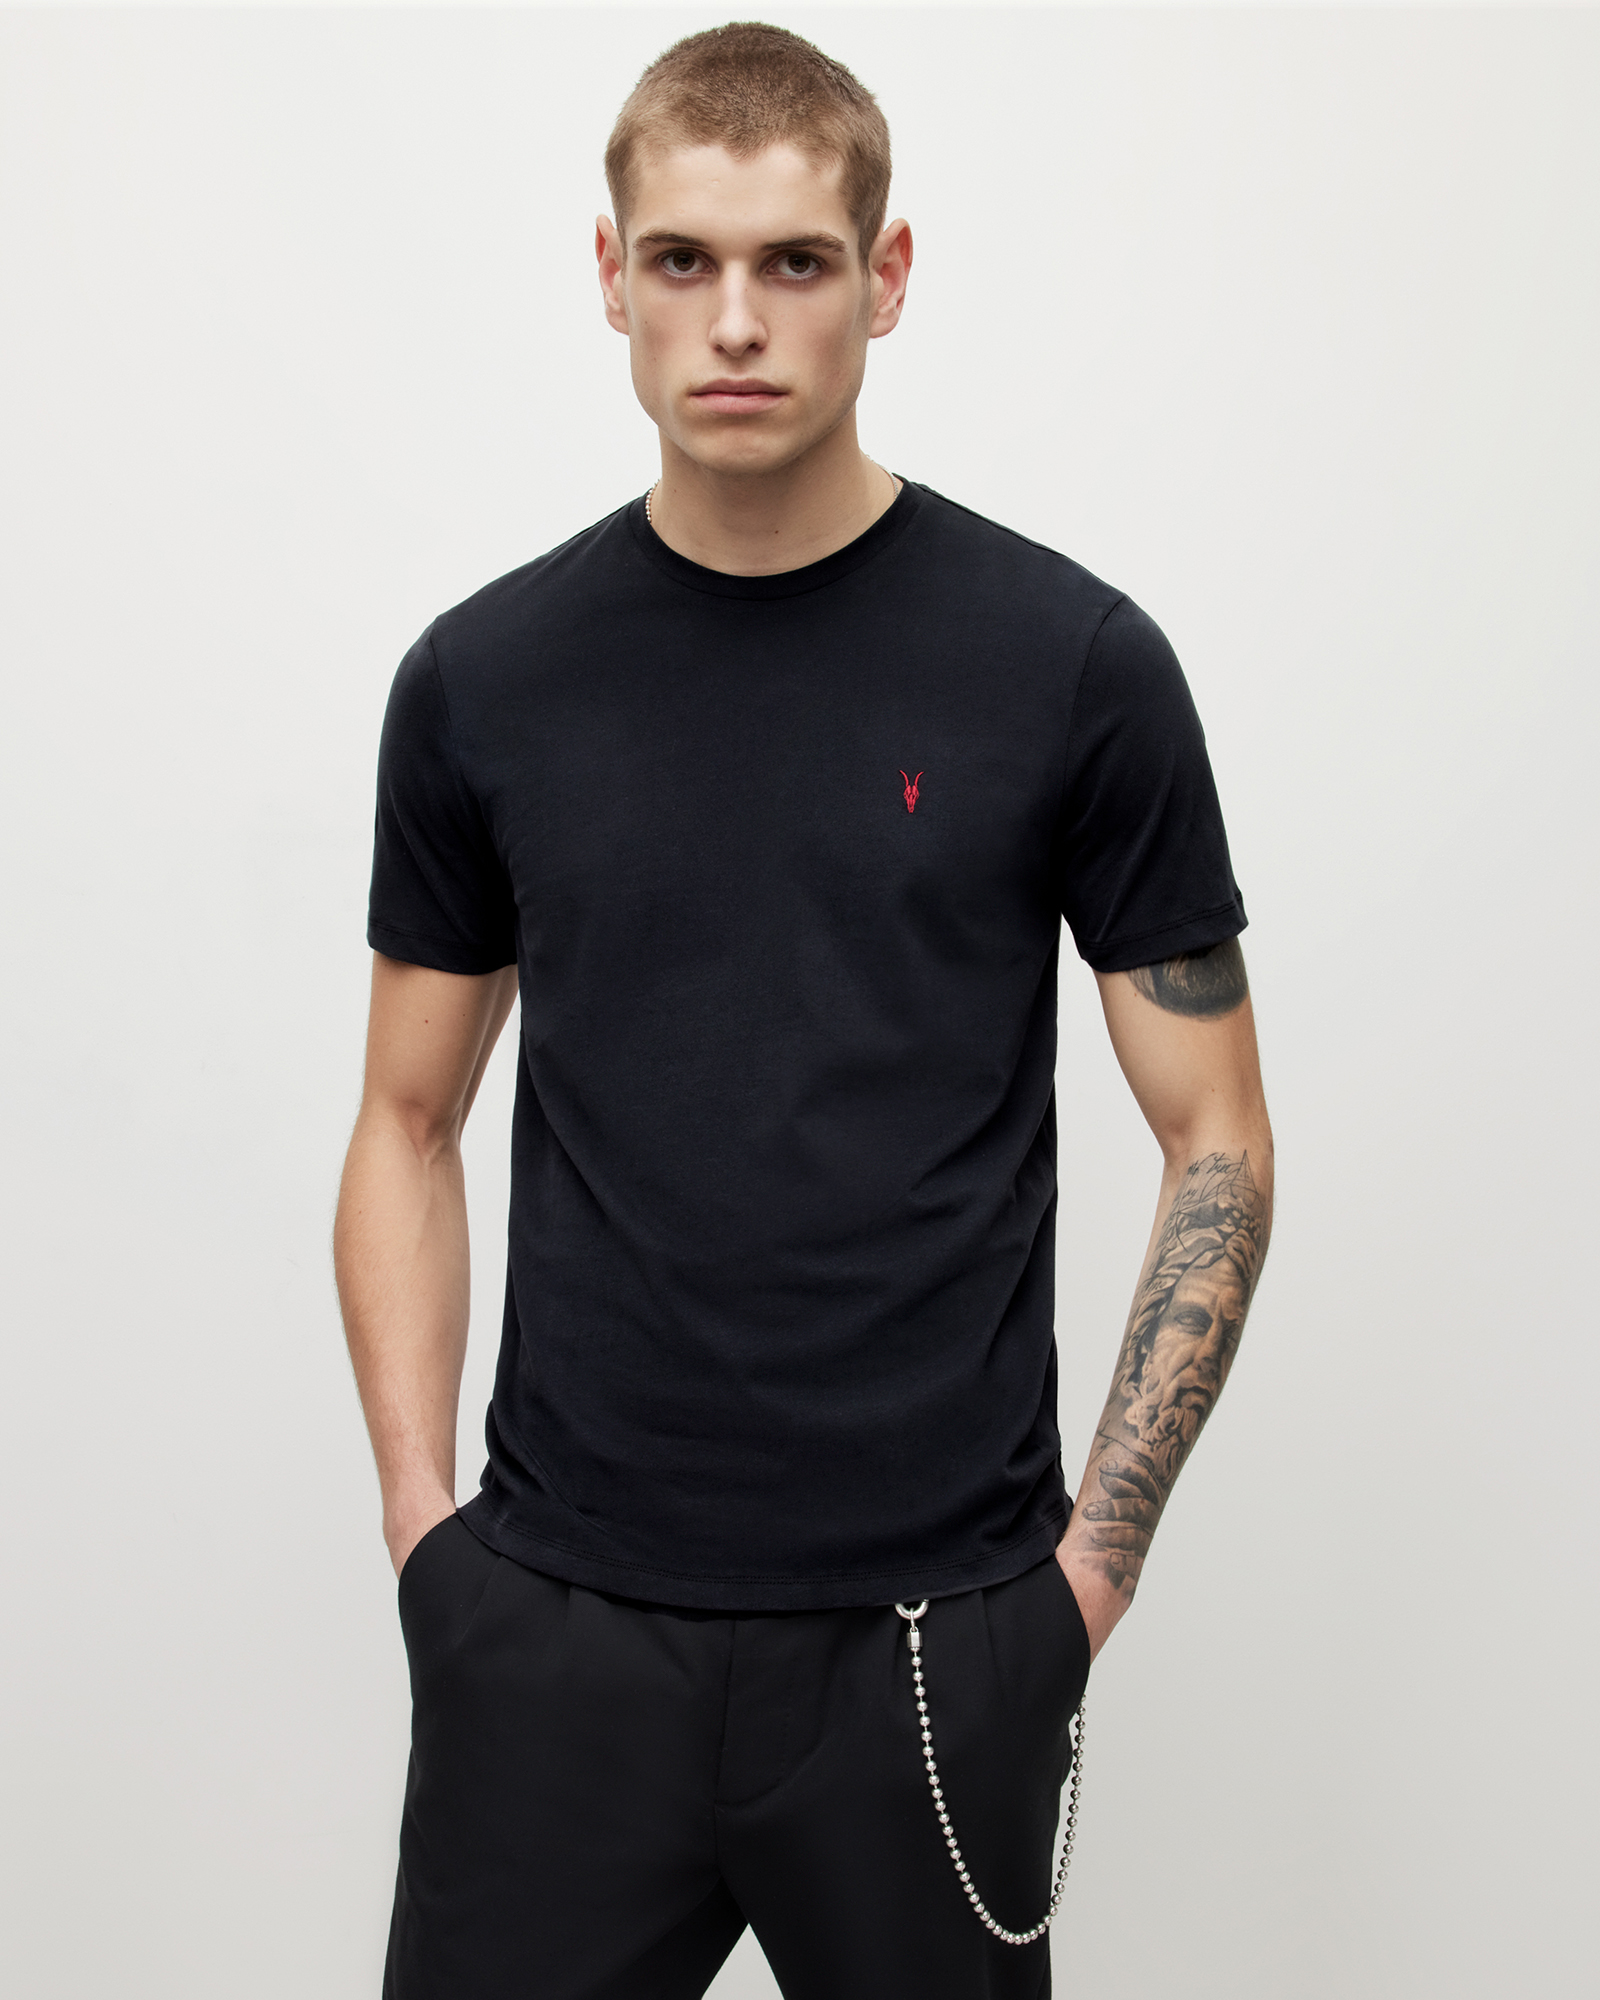 AllSaints Men's Brace Contrast Crew T-Shirt, Washed Black, Size: XL